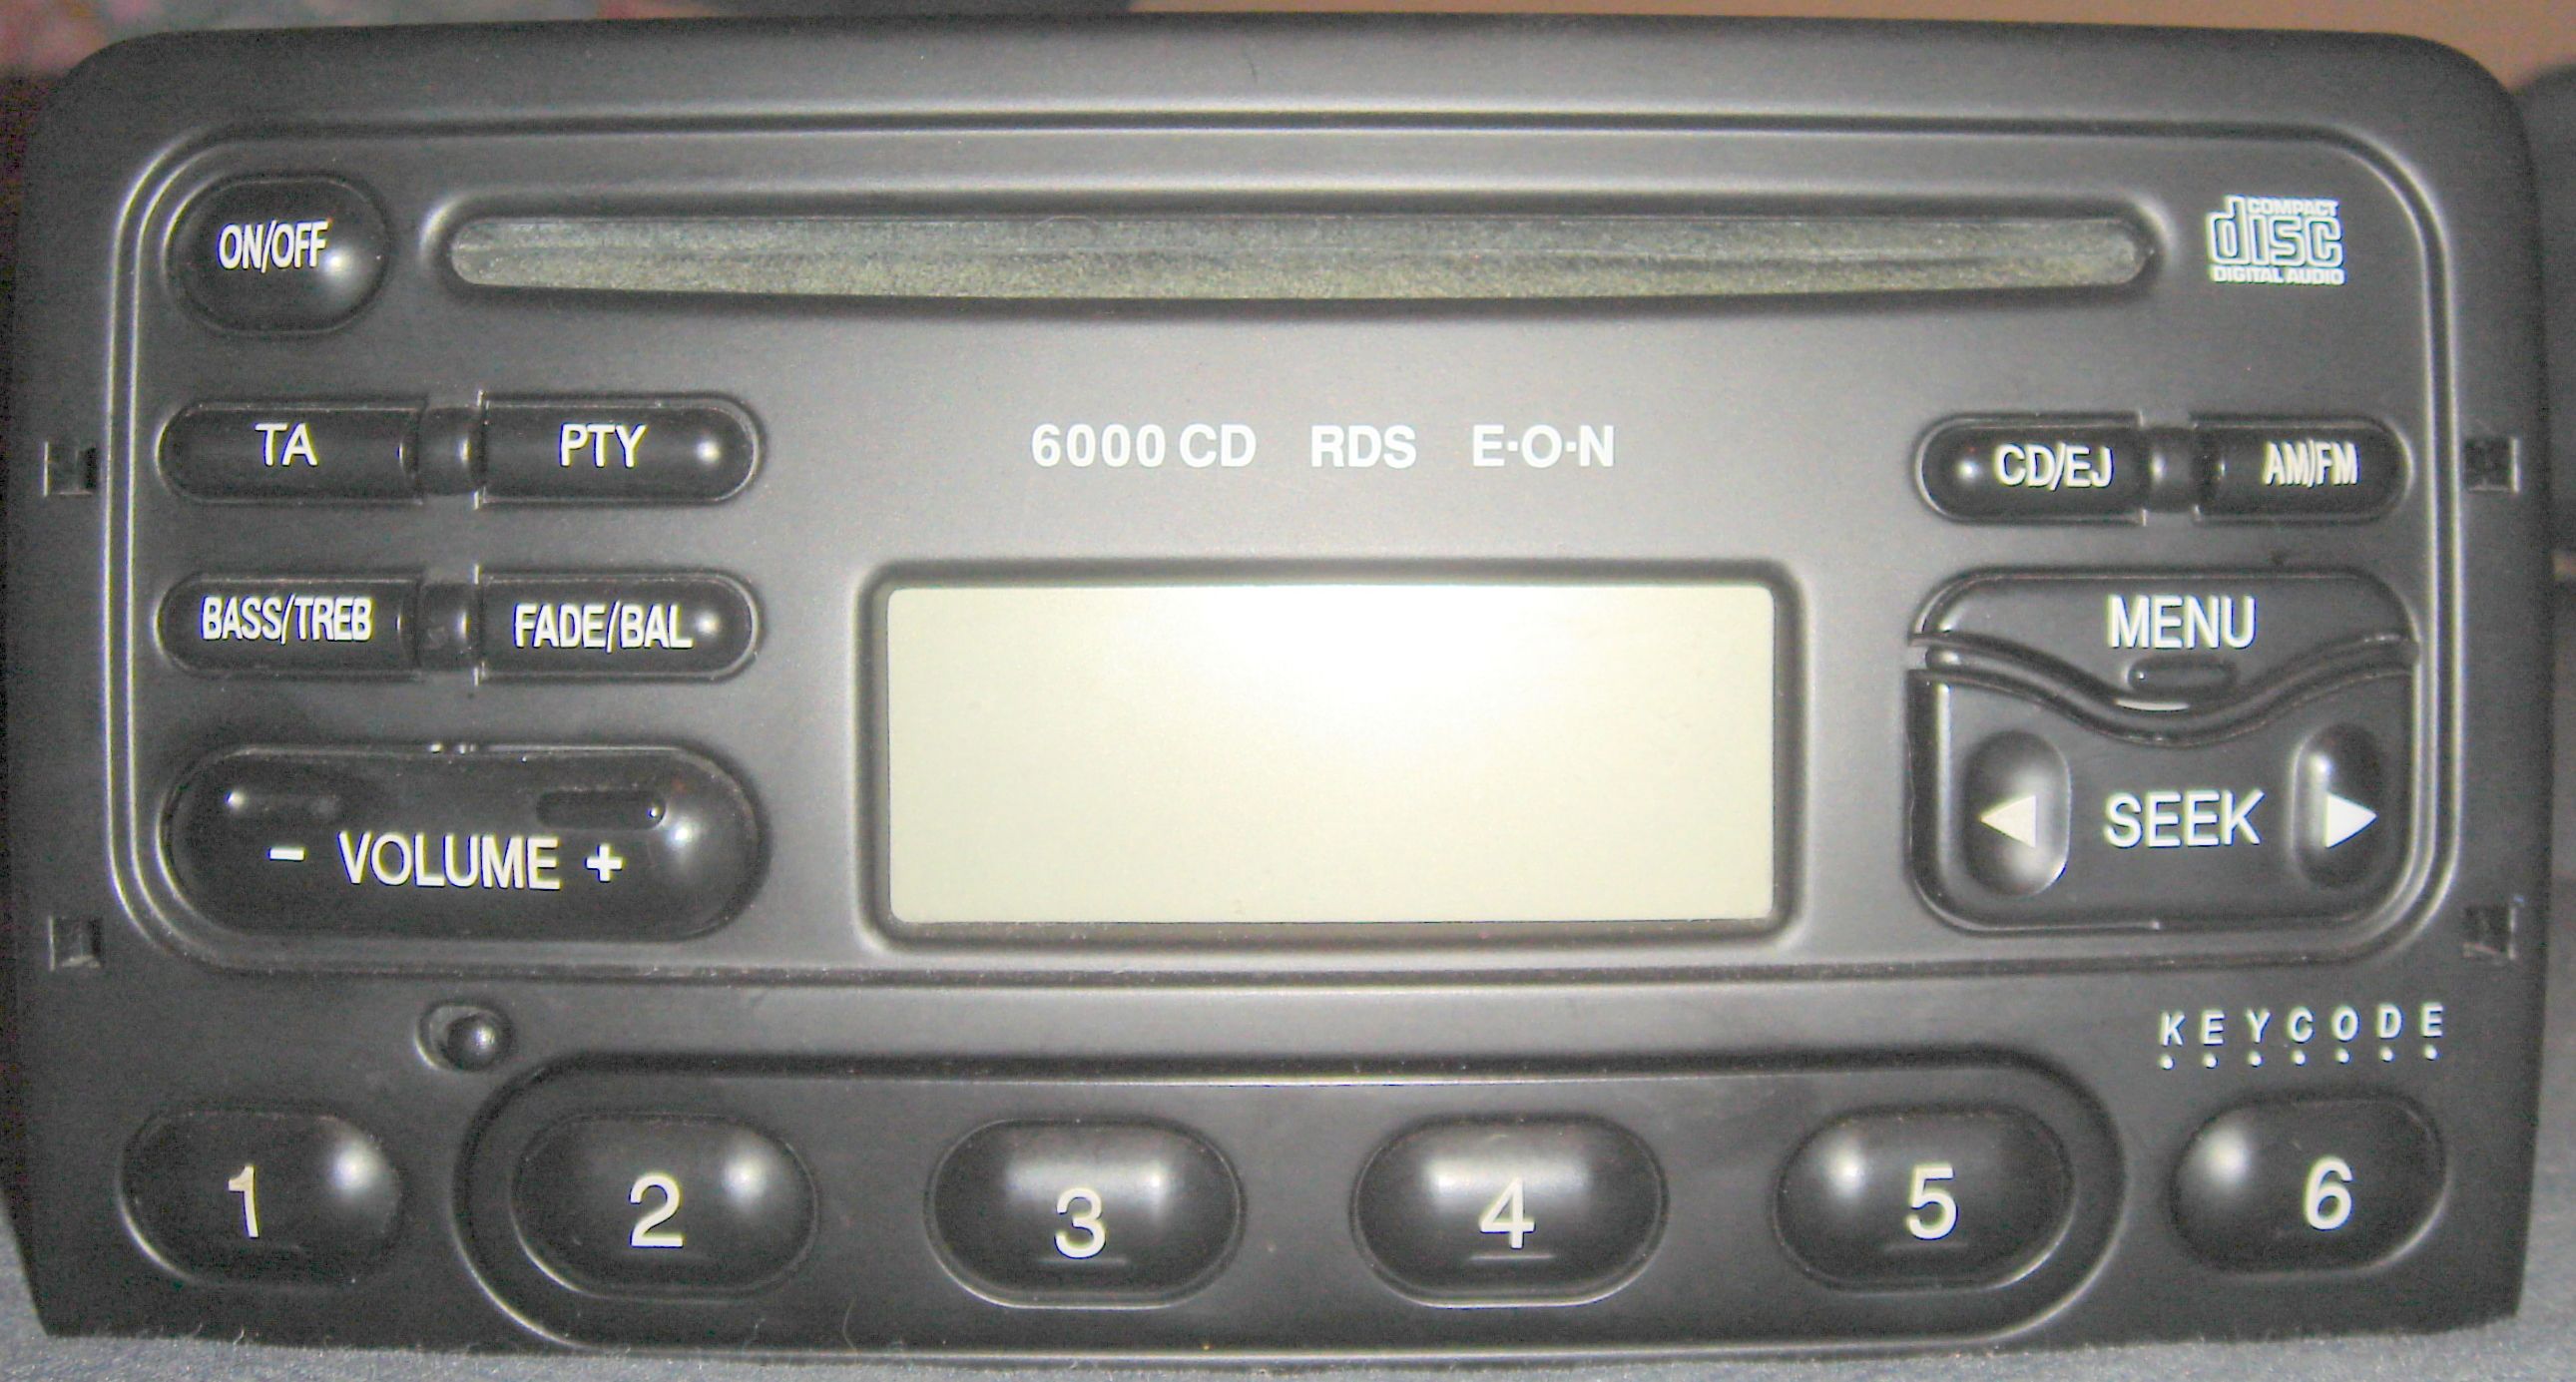 2002 Ford focus radio security code